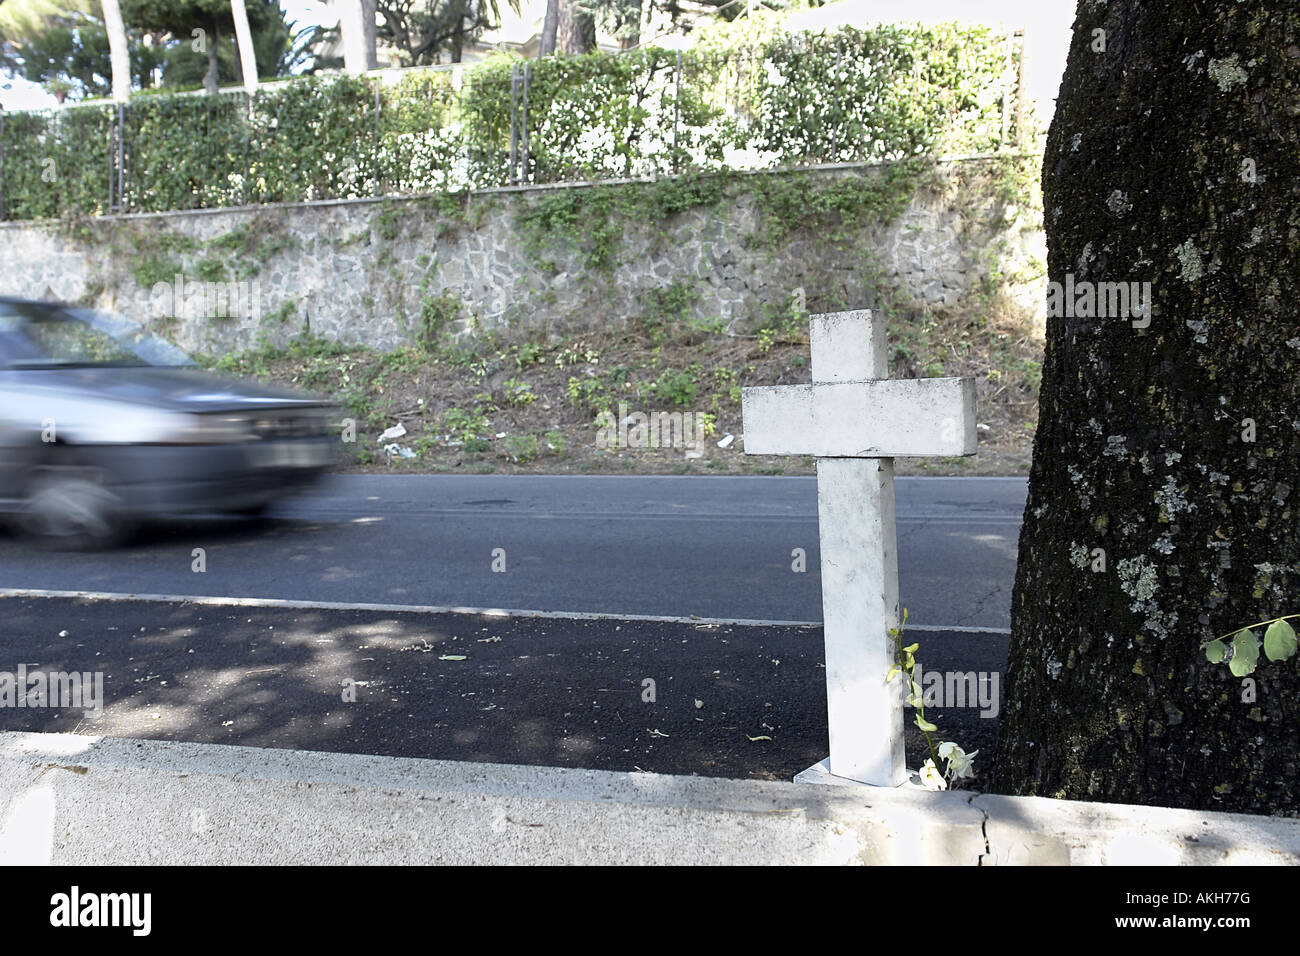 Am Straßenrand Kreuz Hommage an junge Mann Ehre getötet bei Verkehrsunfall in Castel Gandolfo, Italien Stockfoto